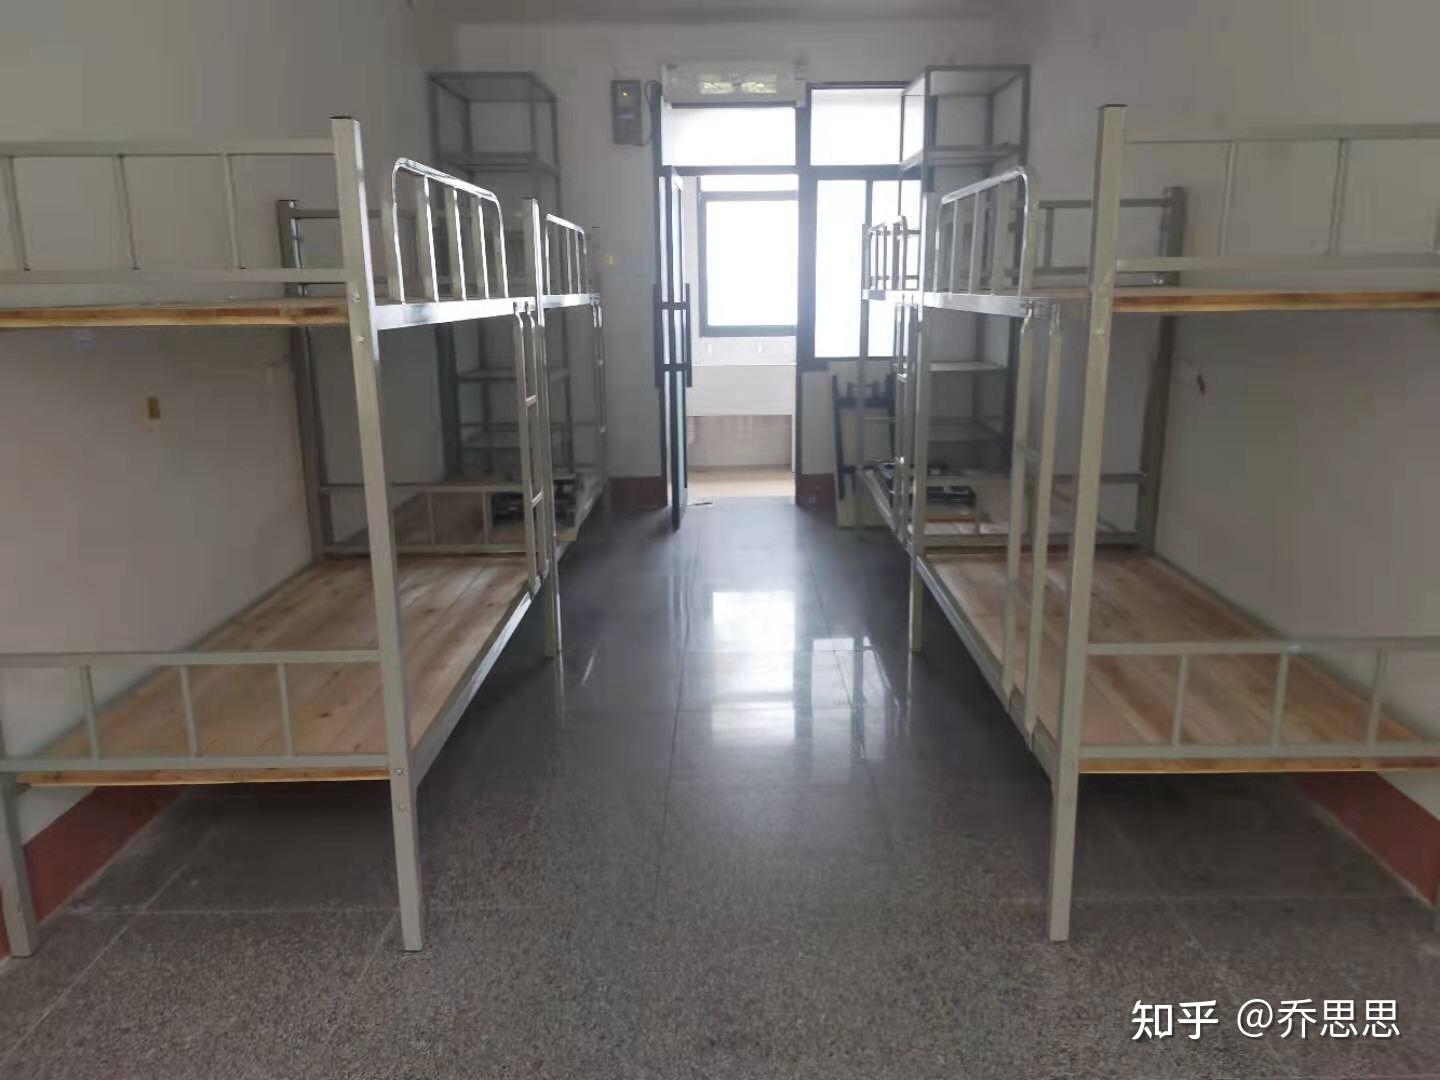 江汉艺术职业学院的宿舍条件如何?校区内有哪些生活设施? 